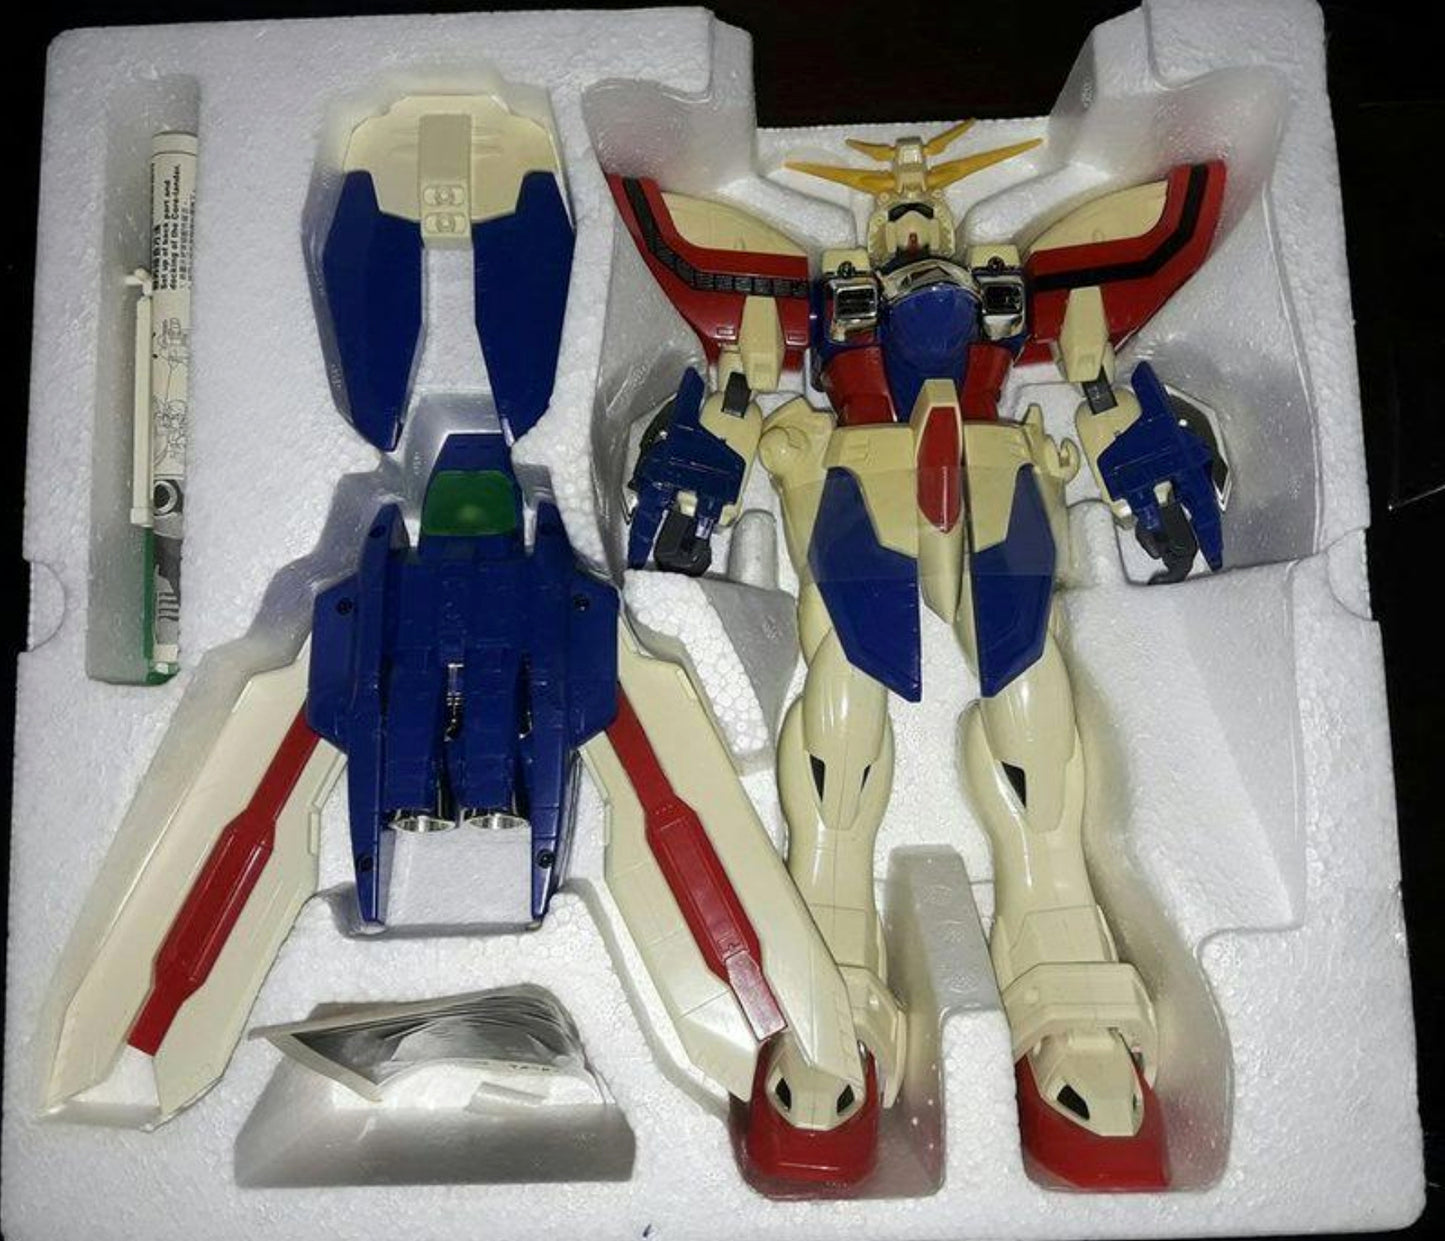 Bandai 1/60 Mobile Fighter G Gundam DX Neo Japan God Burning Gundam Action Figure Used